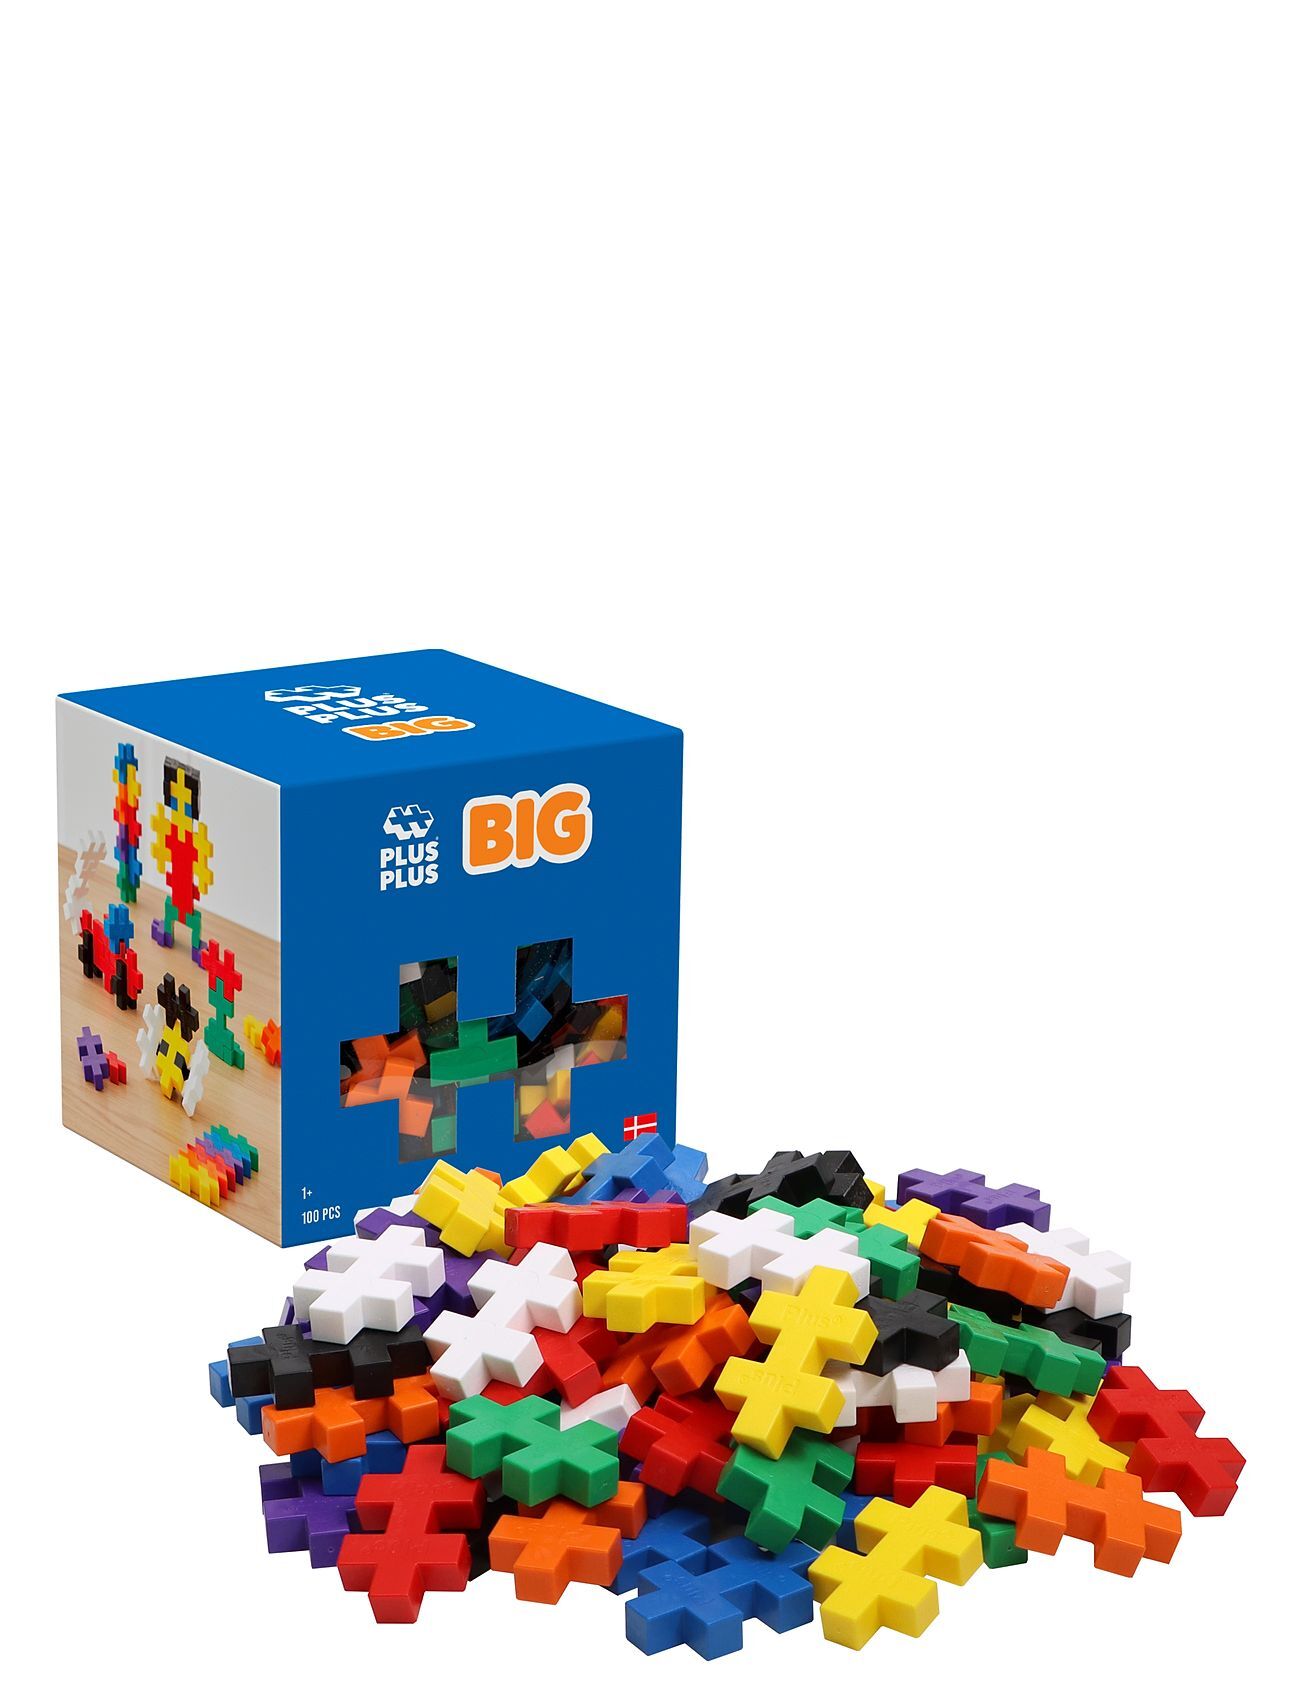 Plus-Plus Big Basic / 100 Pcs Toys Building Sets & Blocks Building Sets Multi/mønstret Plus-Plus